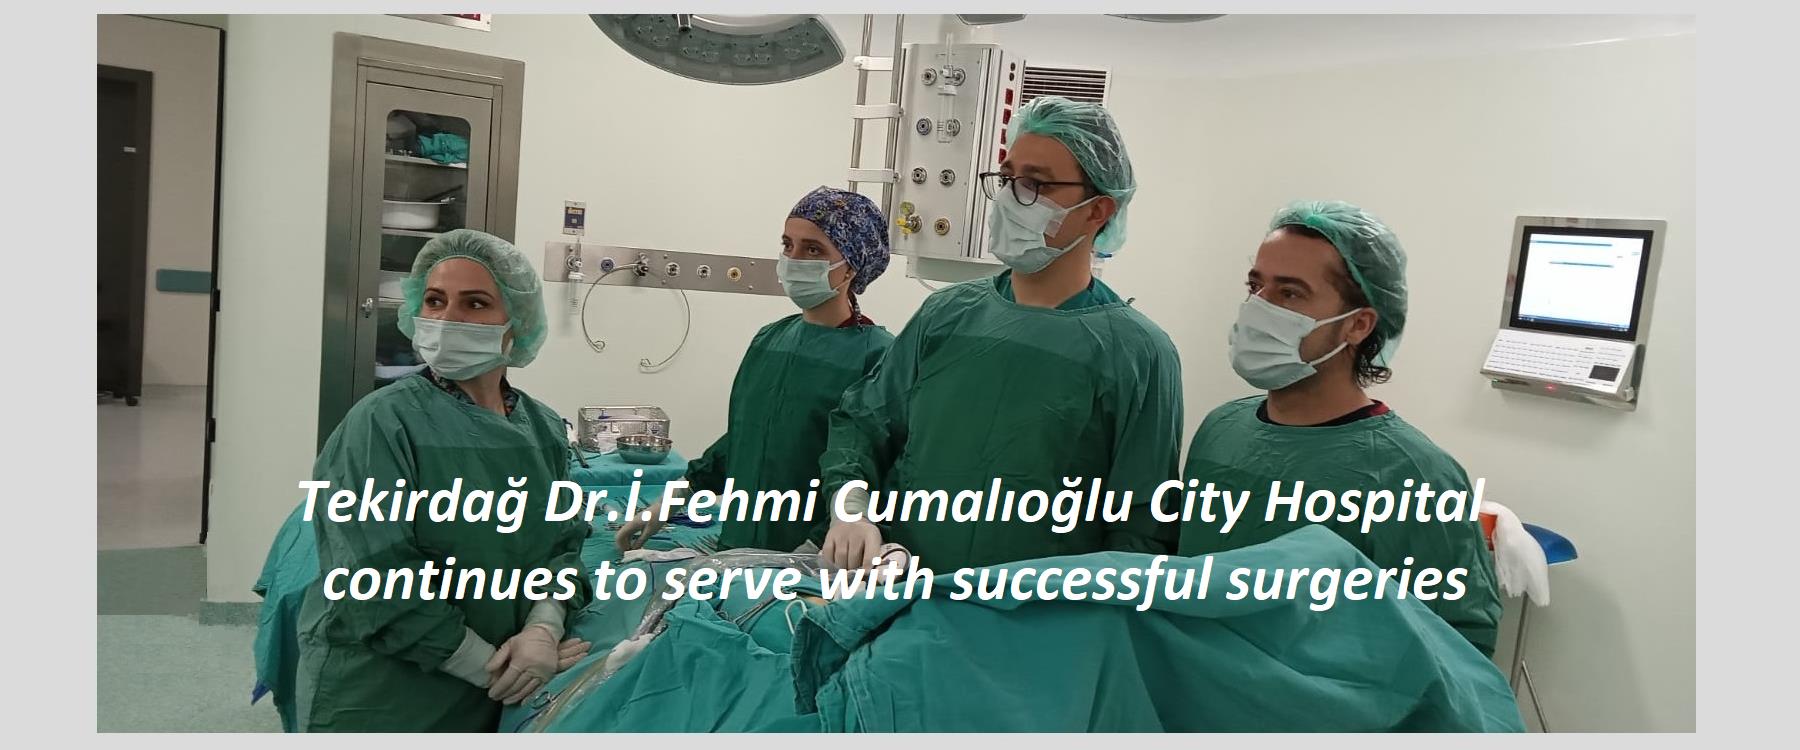 Tekirdağ Dr.İ.Fehmi Cumalıoğlu City Hospital continues to serve with successful surgeries.